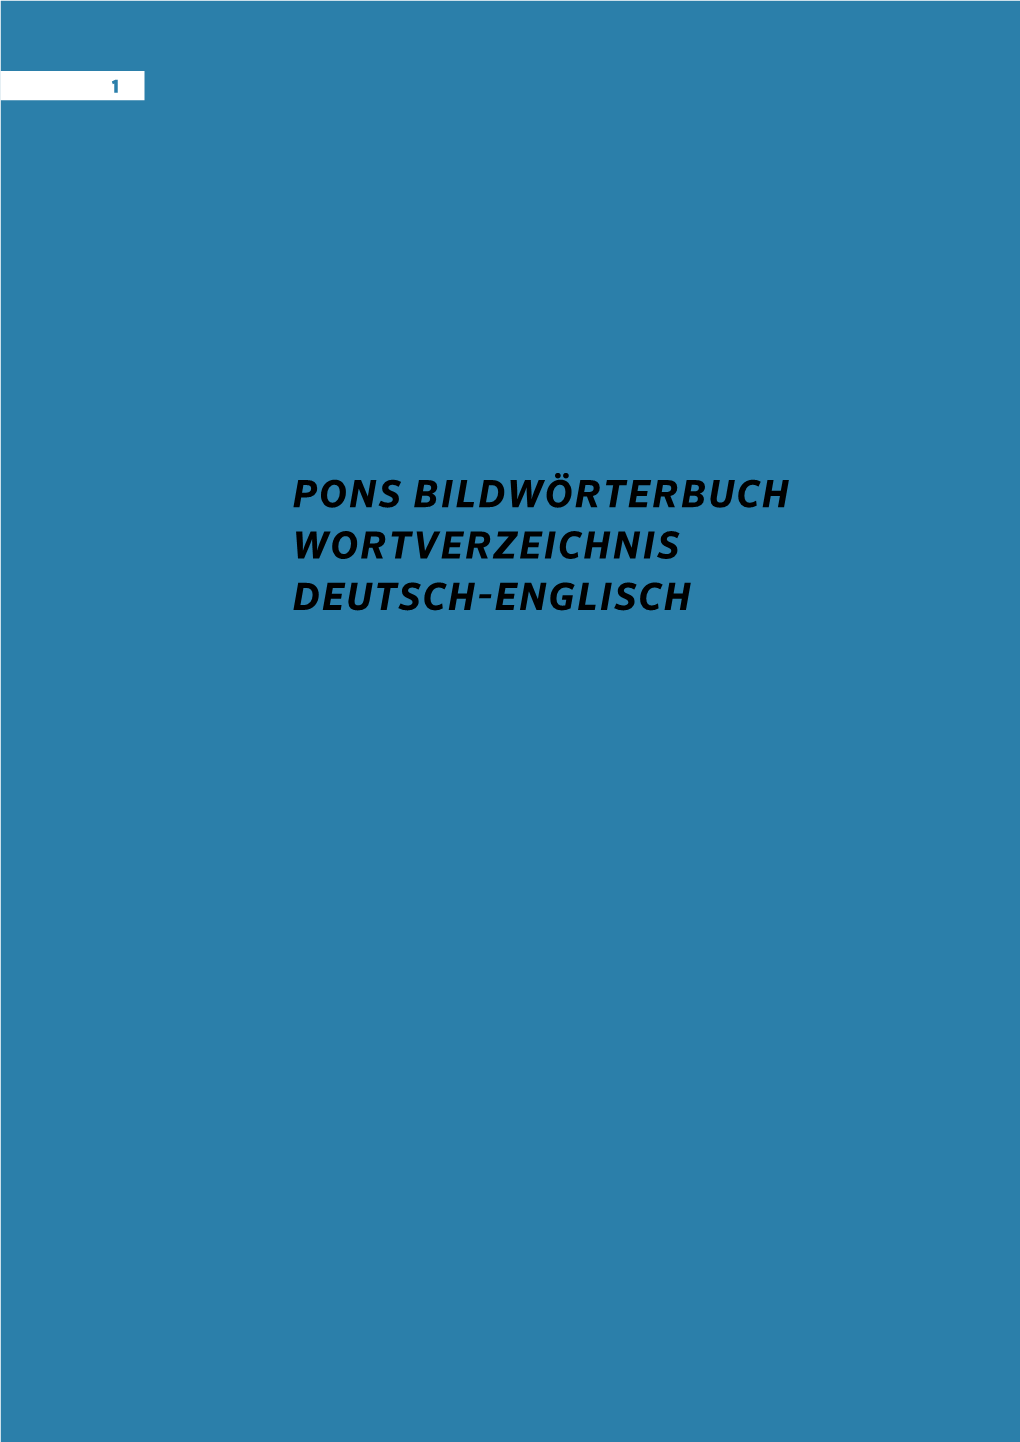 Pons Bildwörterbuch Wortverzeichnis Deutsch-Englisch Wortverzeichnis Deutsch - Englisch 2